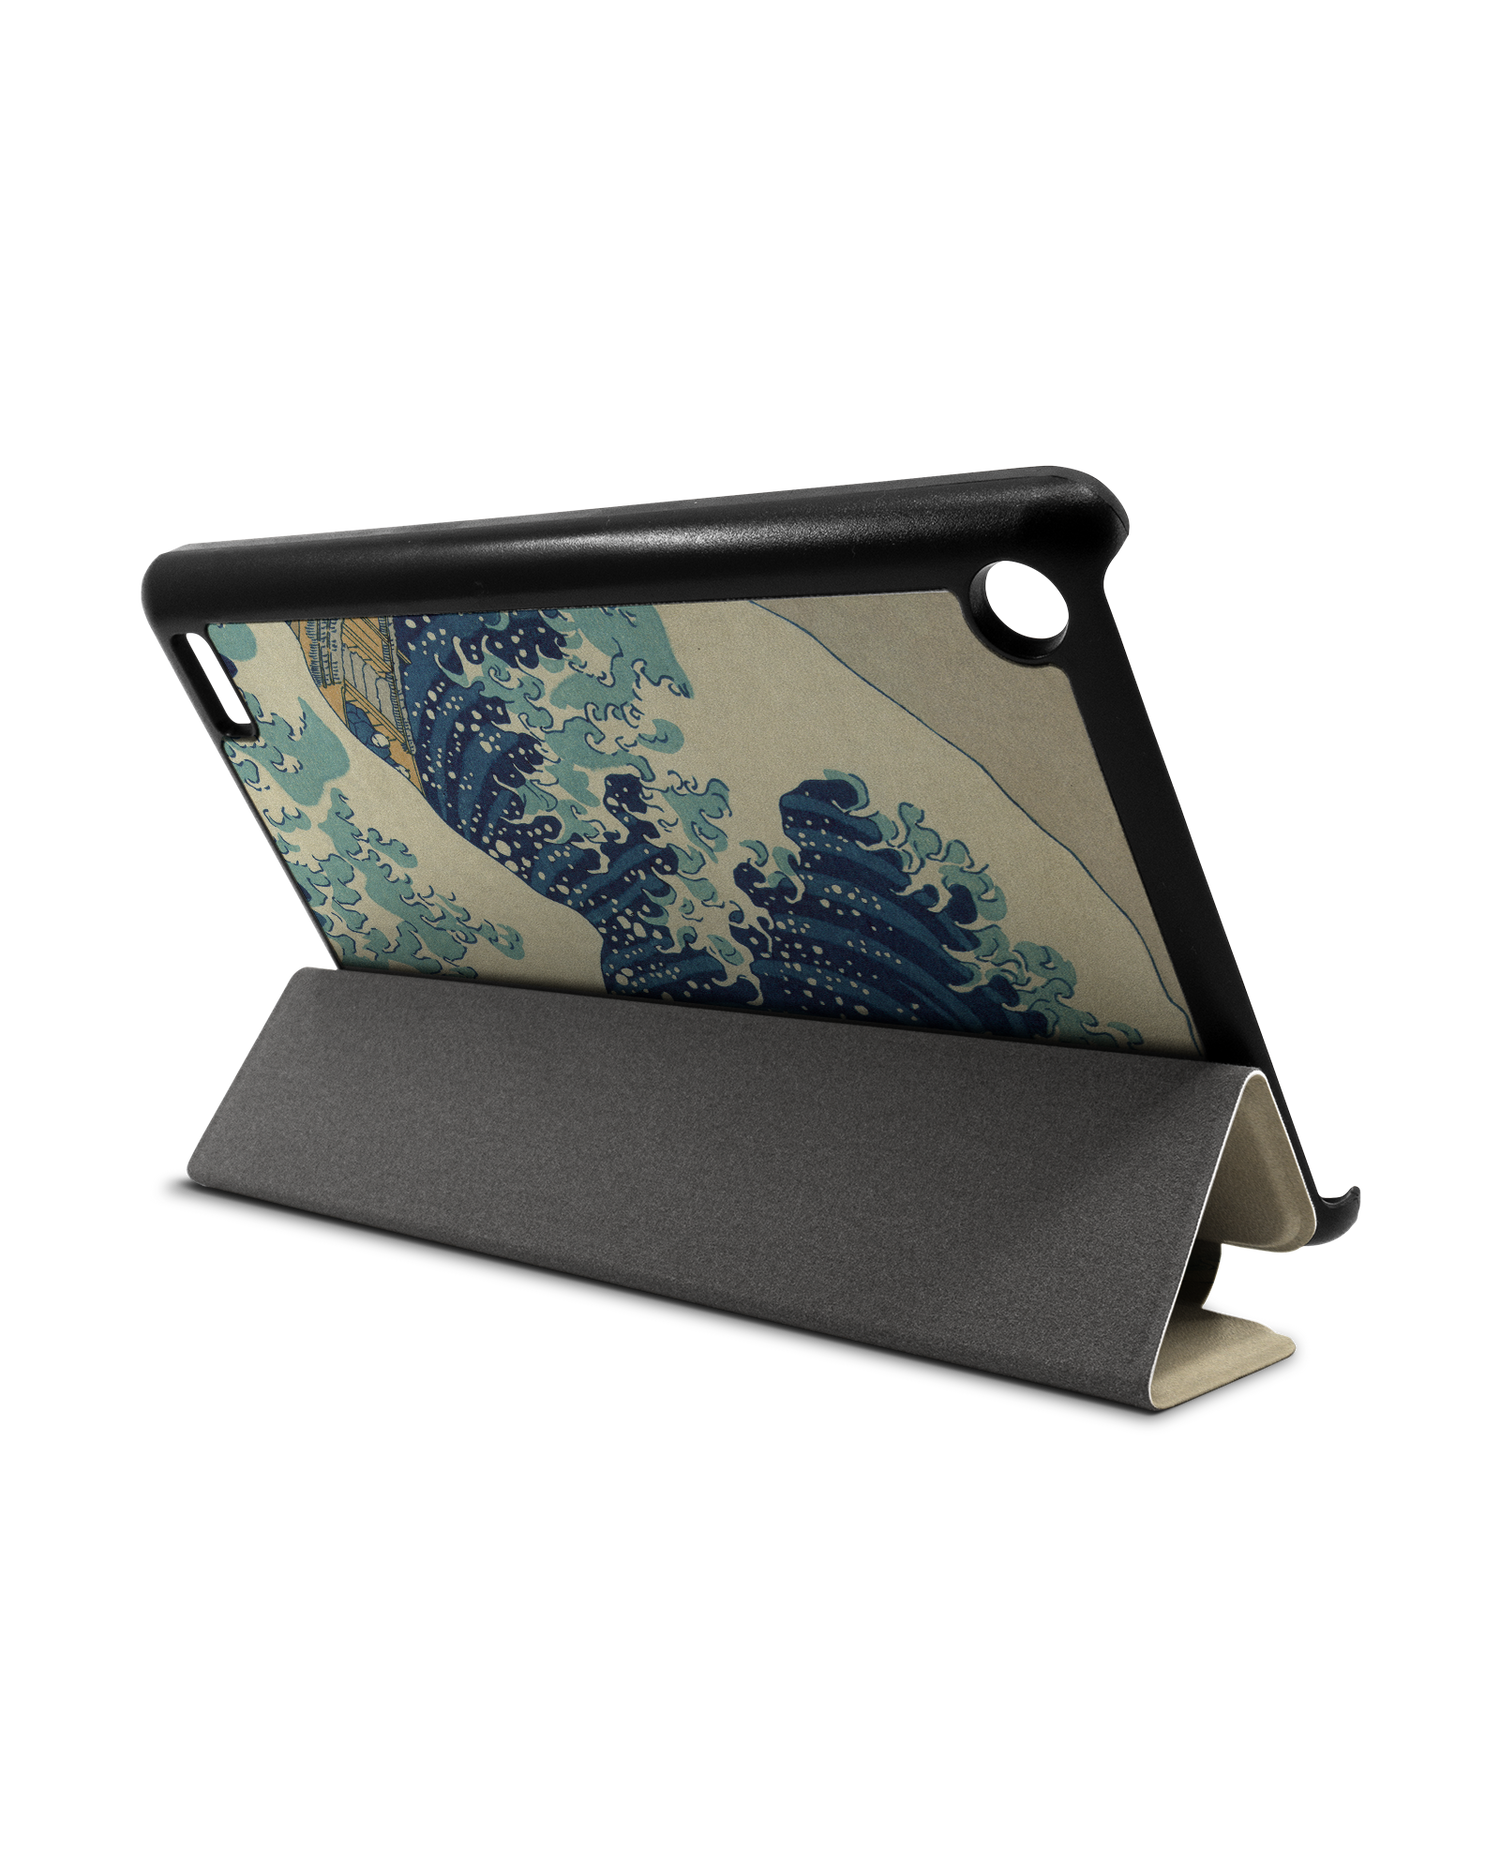 Great Wave Off Kanagawa By Hokusai Tablet Smart Case für Amazon Fire 7: Aufgestellt im Querformat